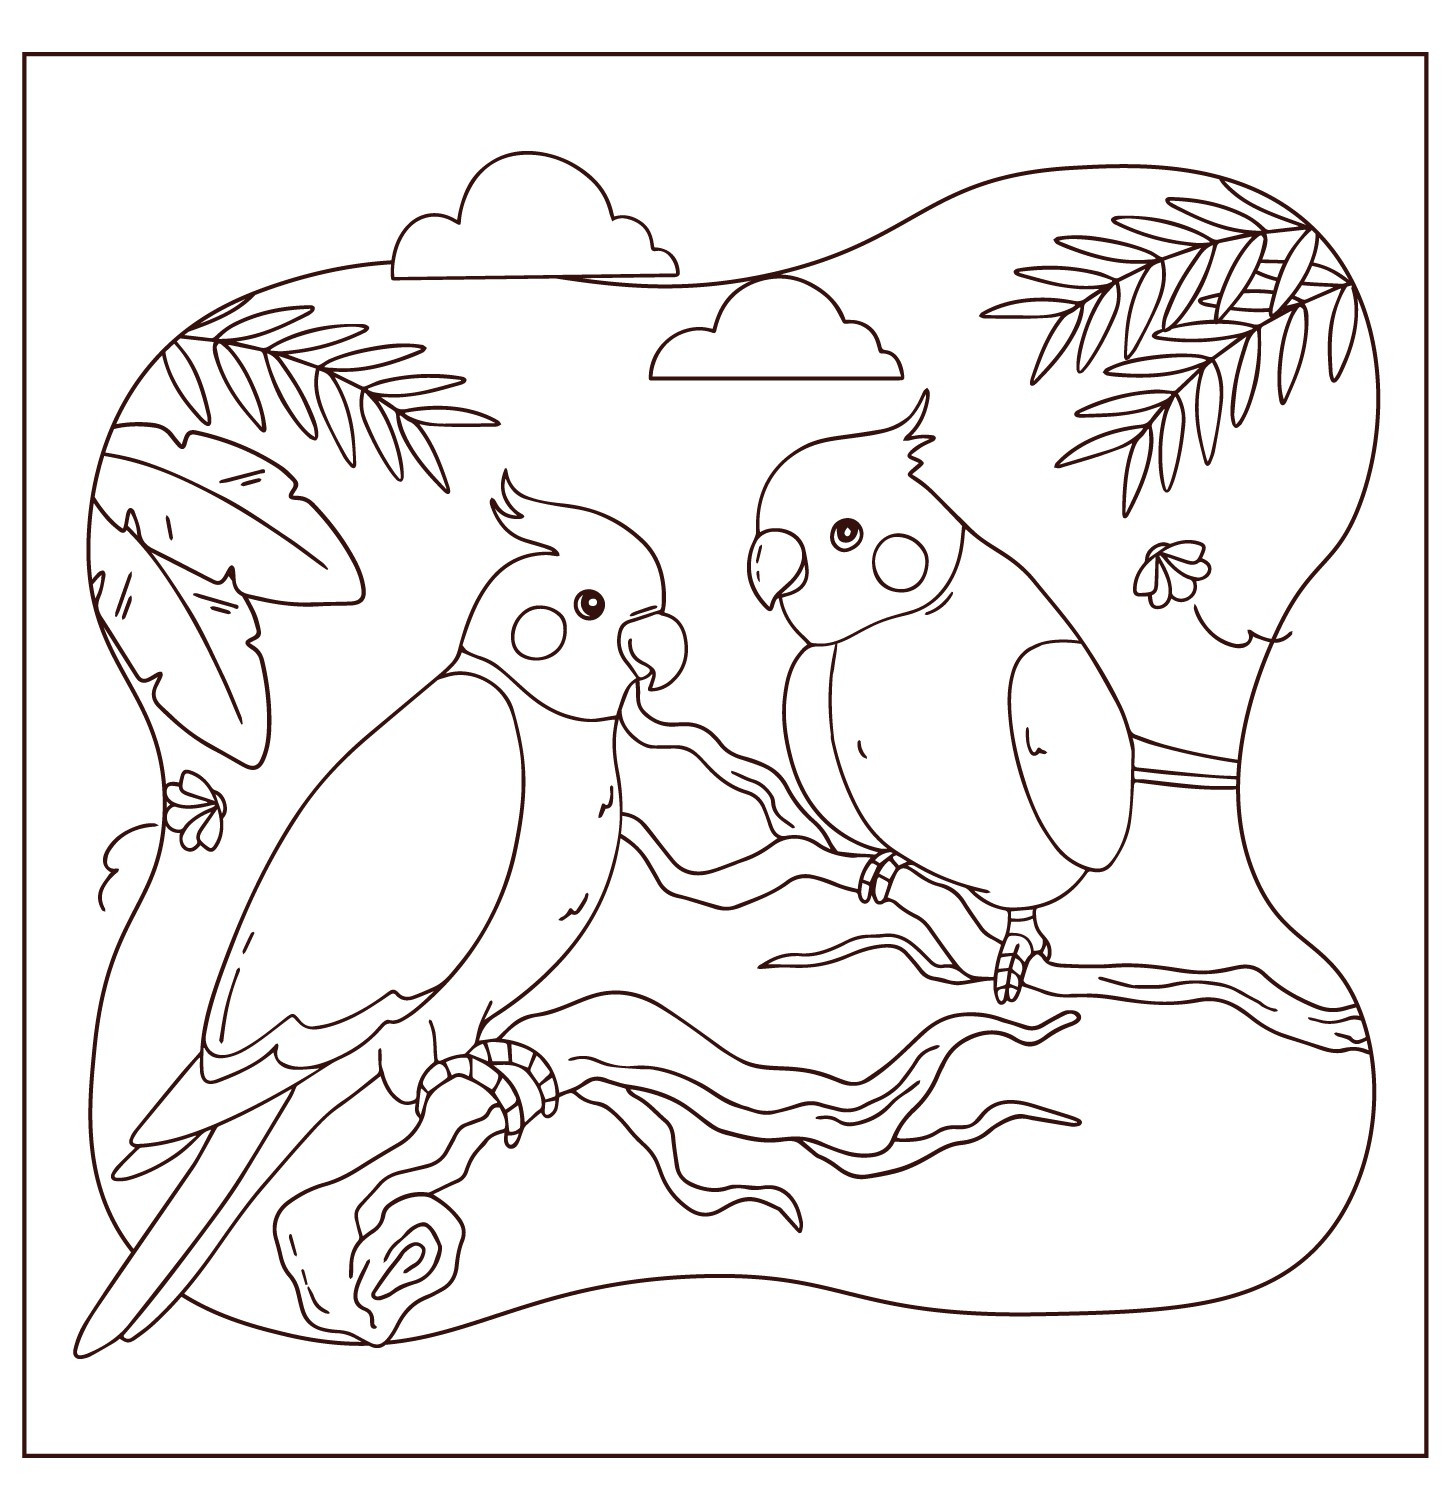 Раскраска для детей: два попугая на ветке